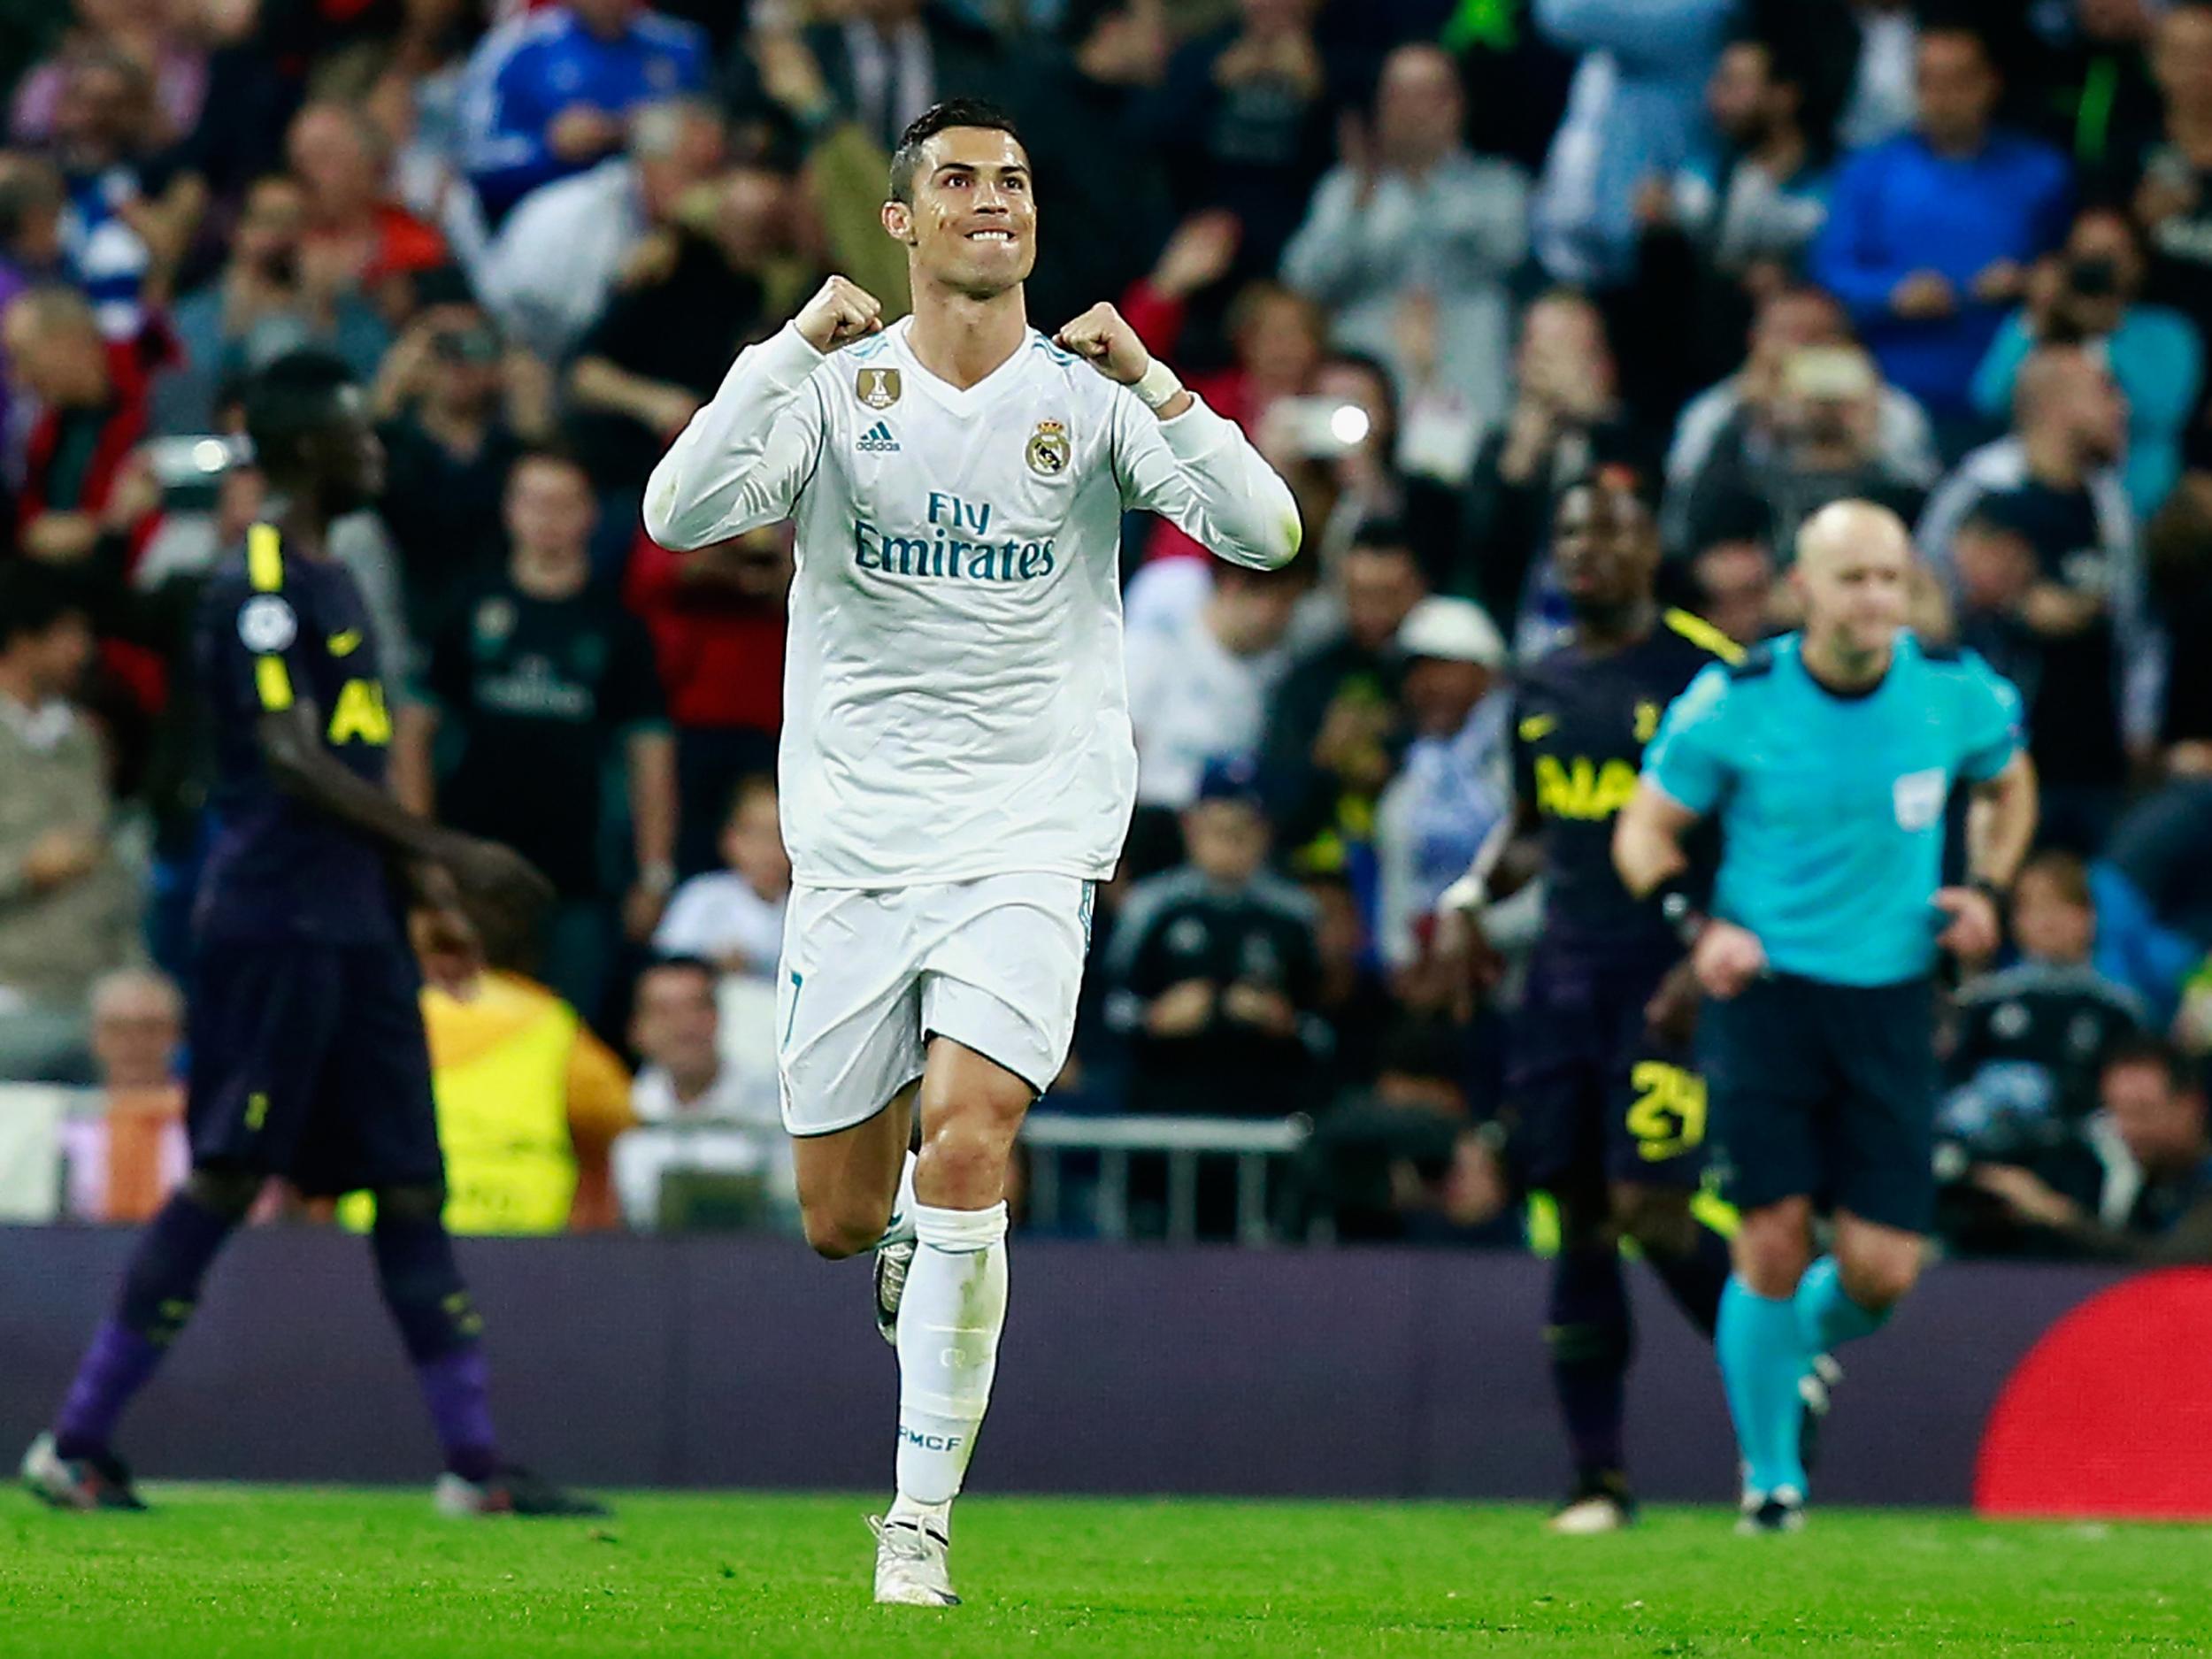 Cristiano Ronaldo picked up last year's top award